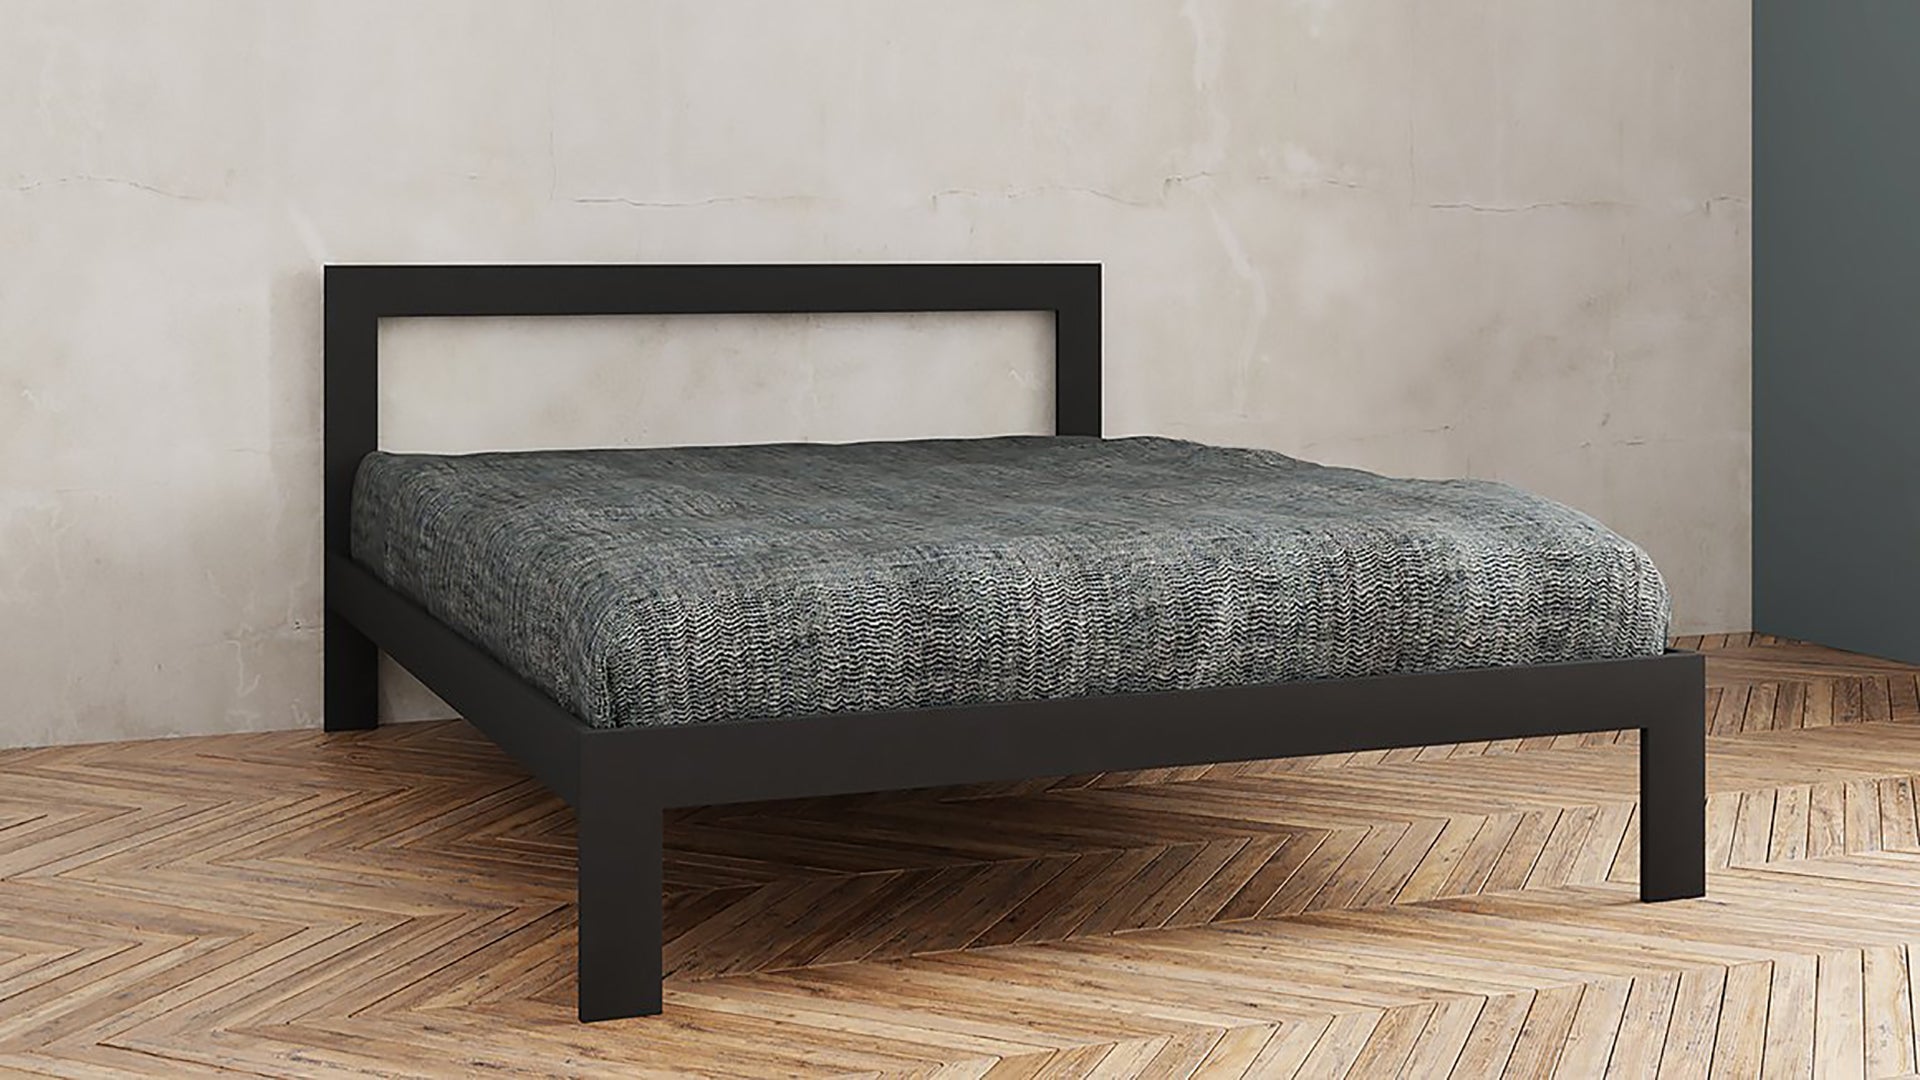  Design bedden |Minimalistisch design bedden | Minimalist design beds | Camas minimalistas| Minimalistische Betten